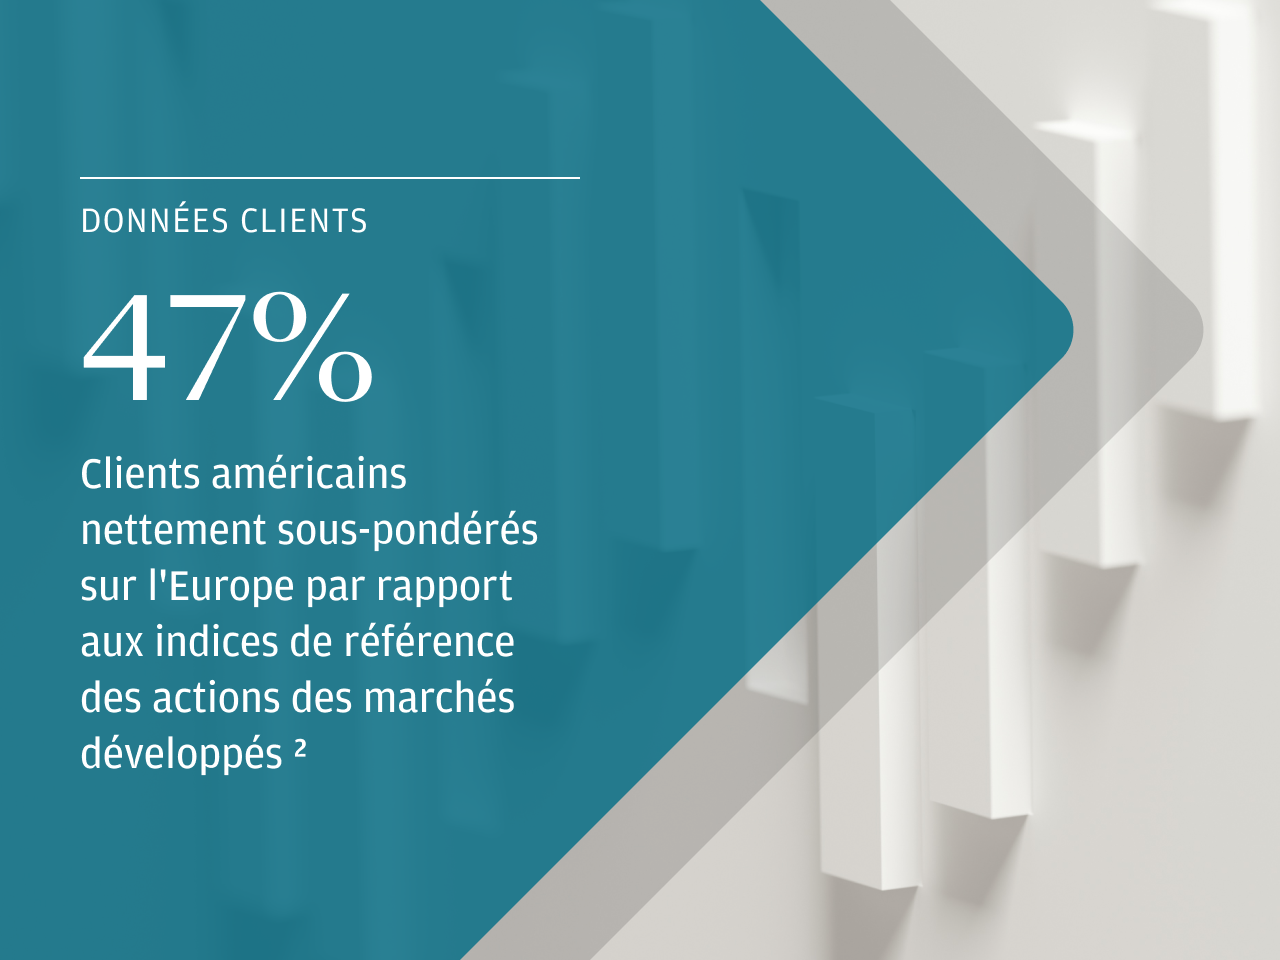 Données clients 47% Clients américains nettement sous-pondérés sur l'Europe par rapport aux indices de référence des actions des marchés développés. footnote 2